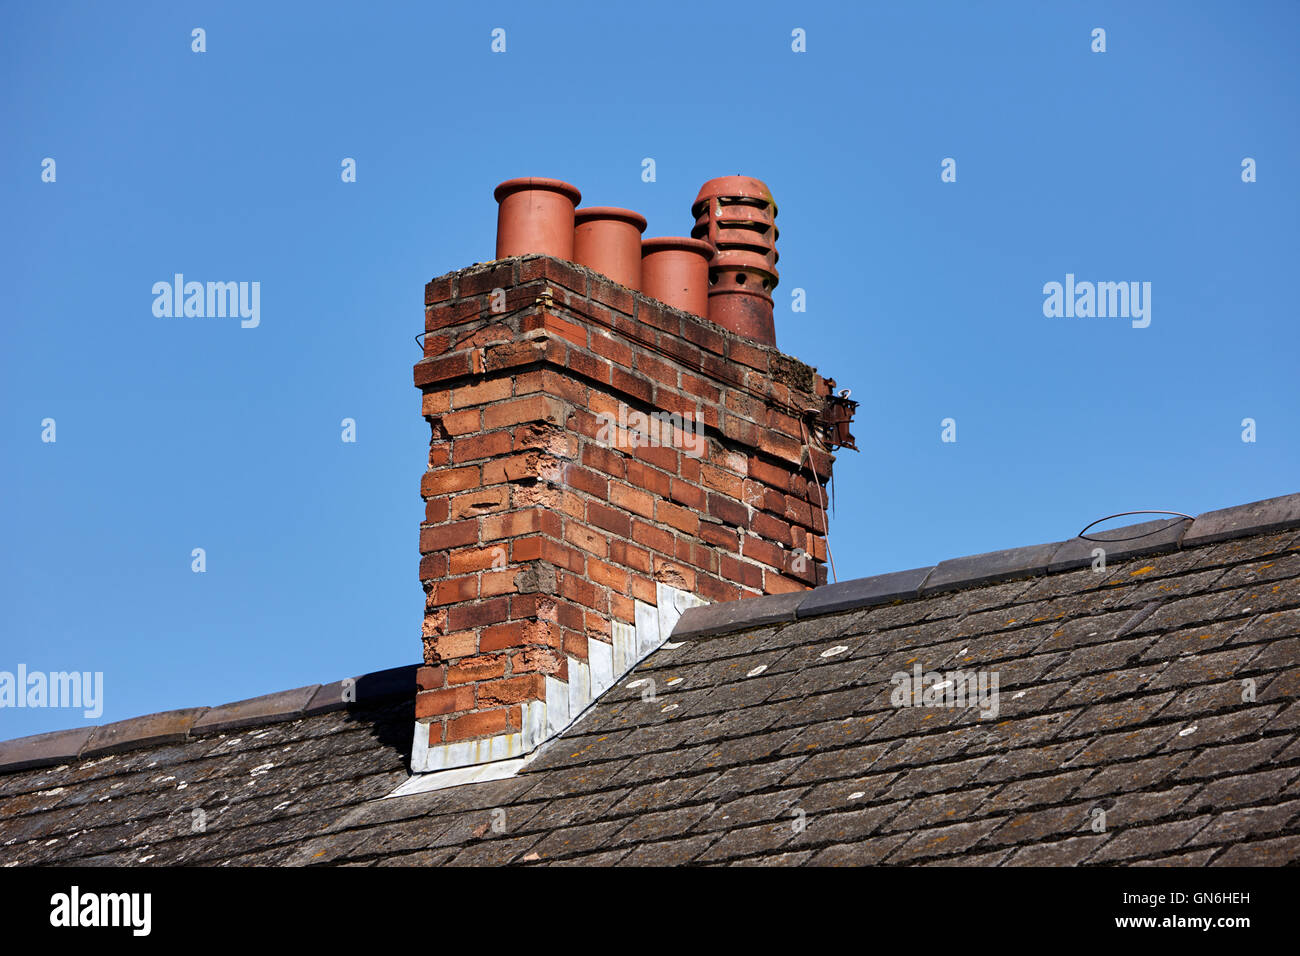 Vieille cheminée victorienne avec des pots sur le toit d'une rangée de maisons mitoyennes against a blue sky au Royaume-Uni Banque D'Images